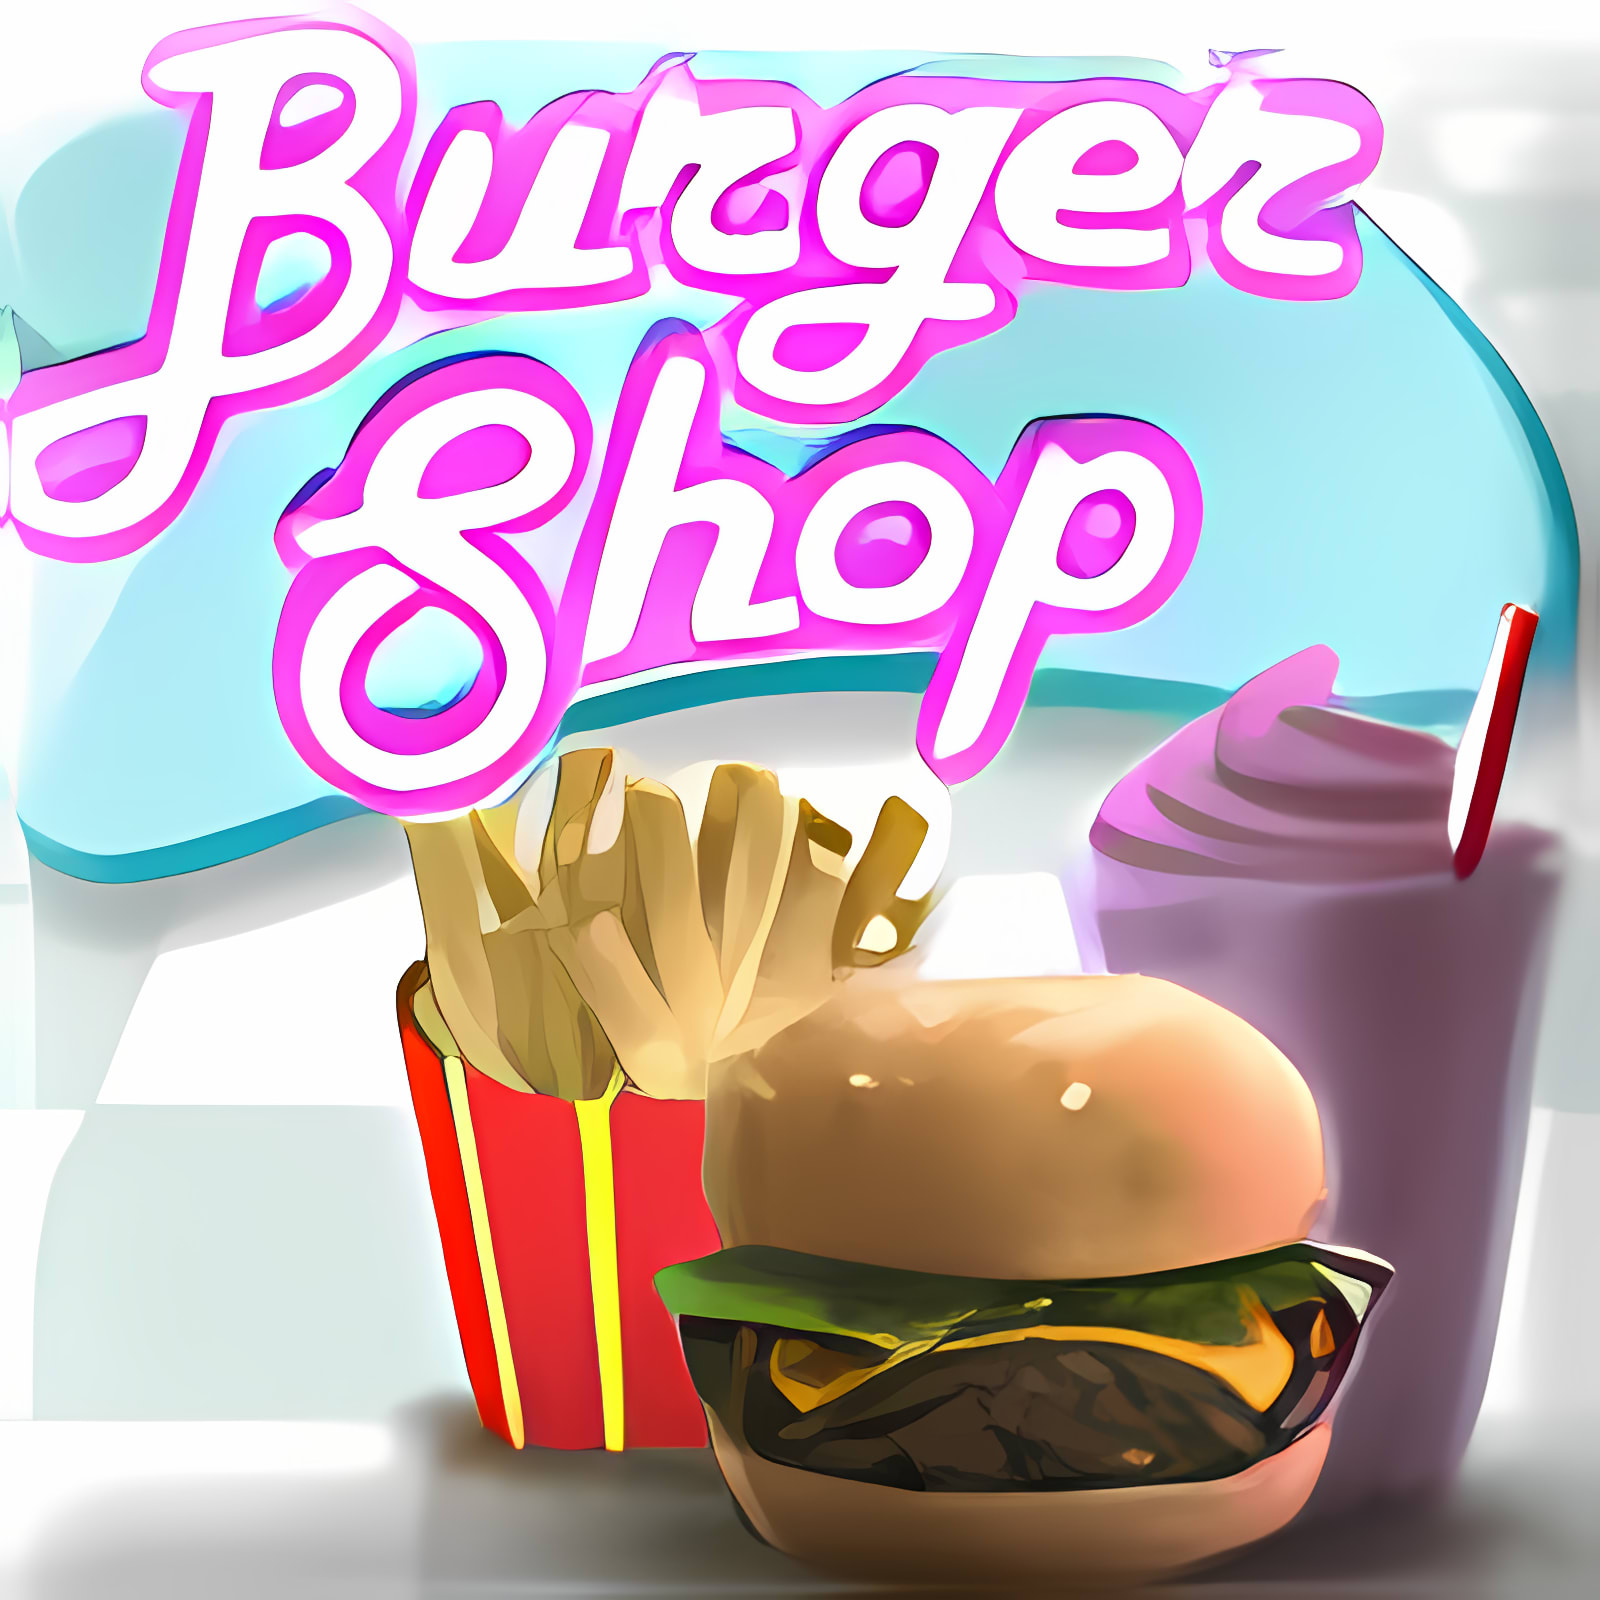 burger shop 2 mac